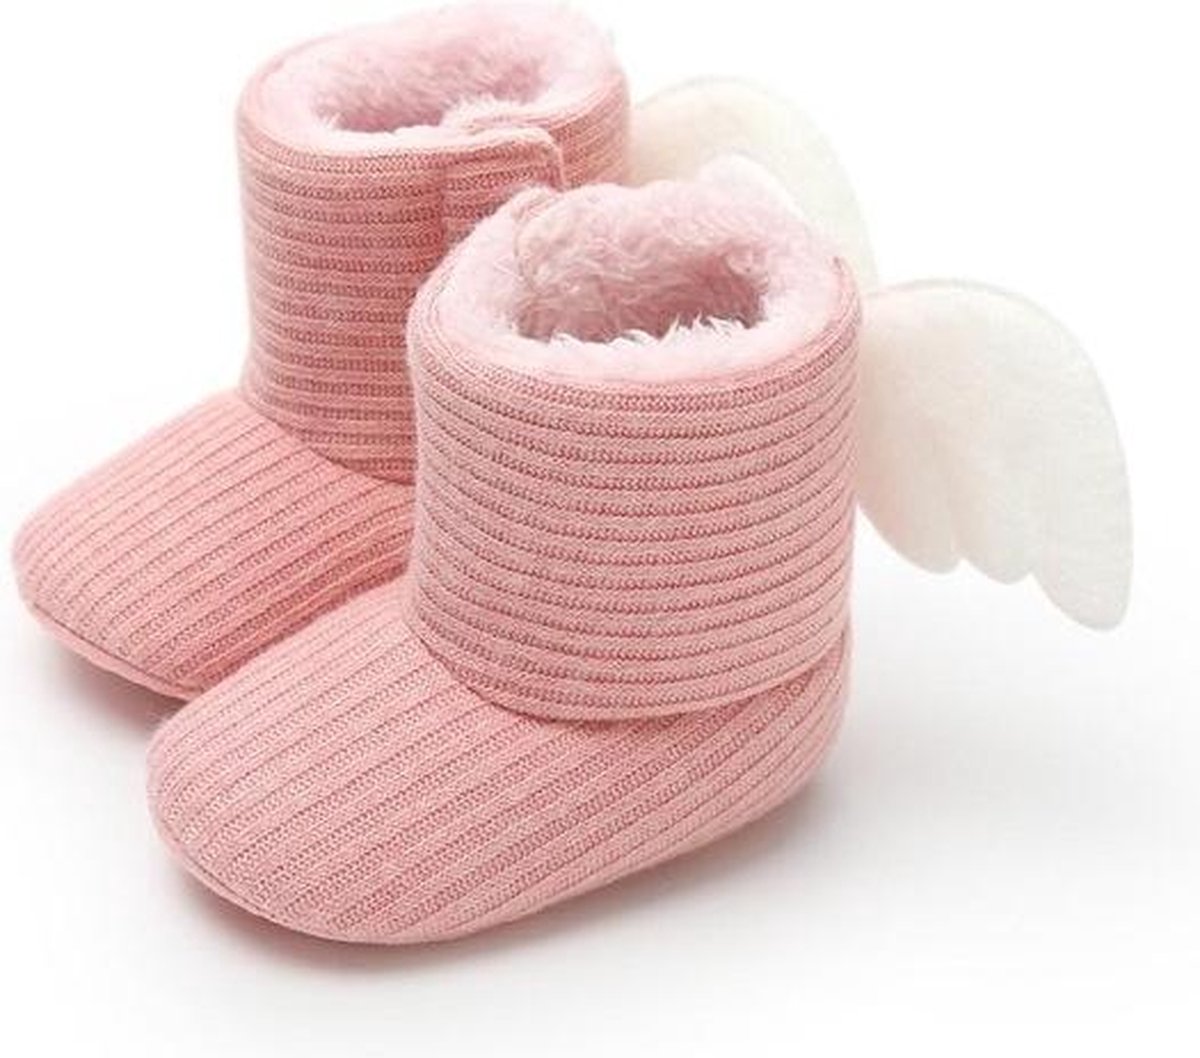 Babyslofjes - Baby Slofjes Meisjes - Roze - Met Vleugels - Maat 20 - 6-9 maanden